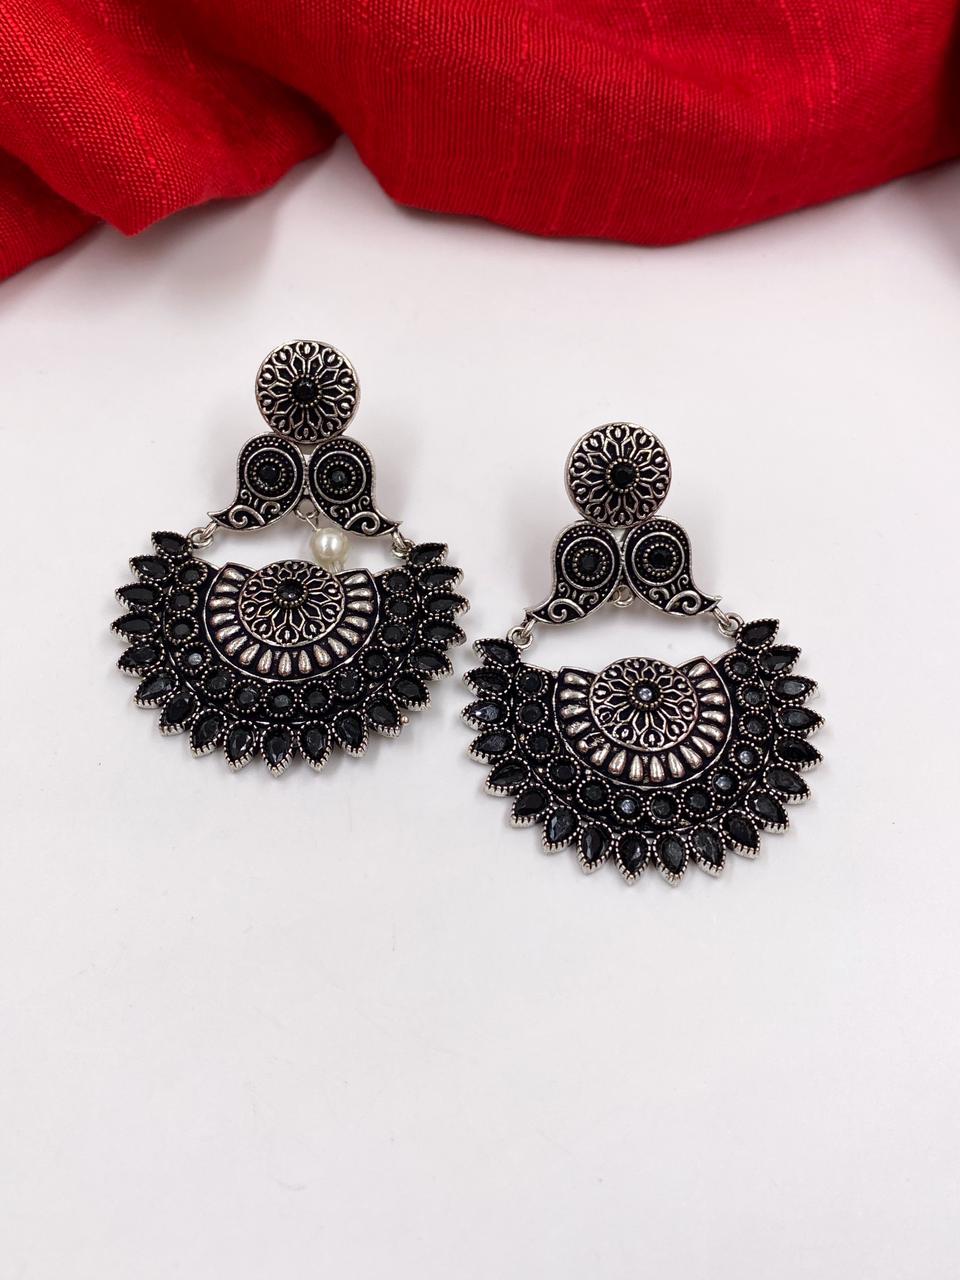 Oxidised Earrings Jhumka | Oxidised Stud Earrings Online